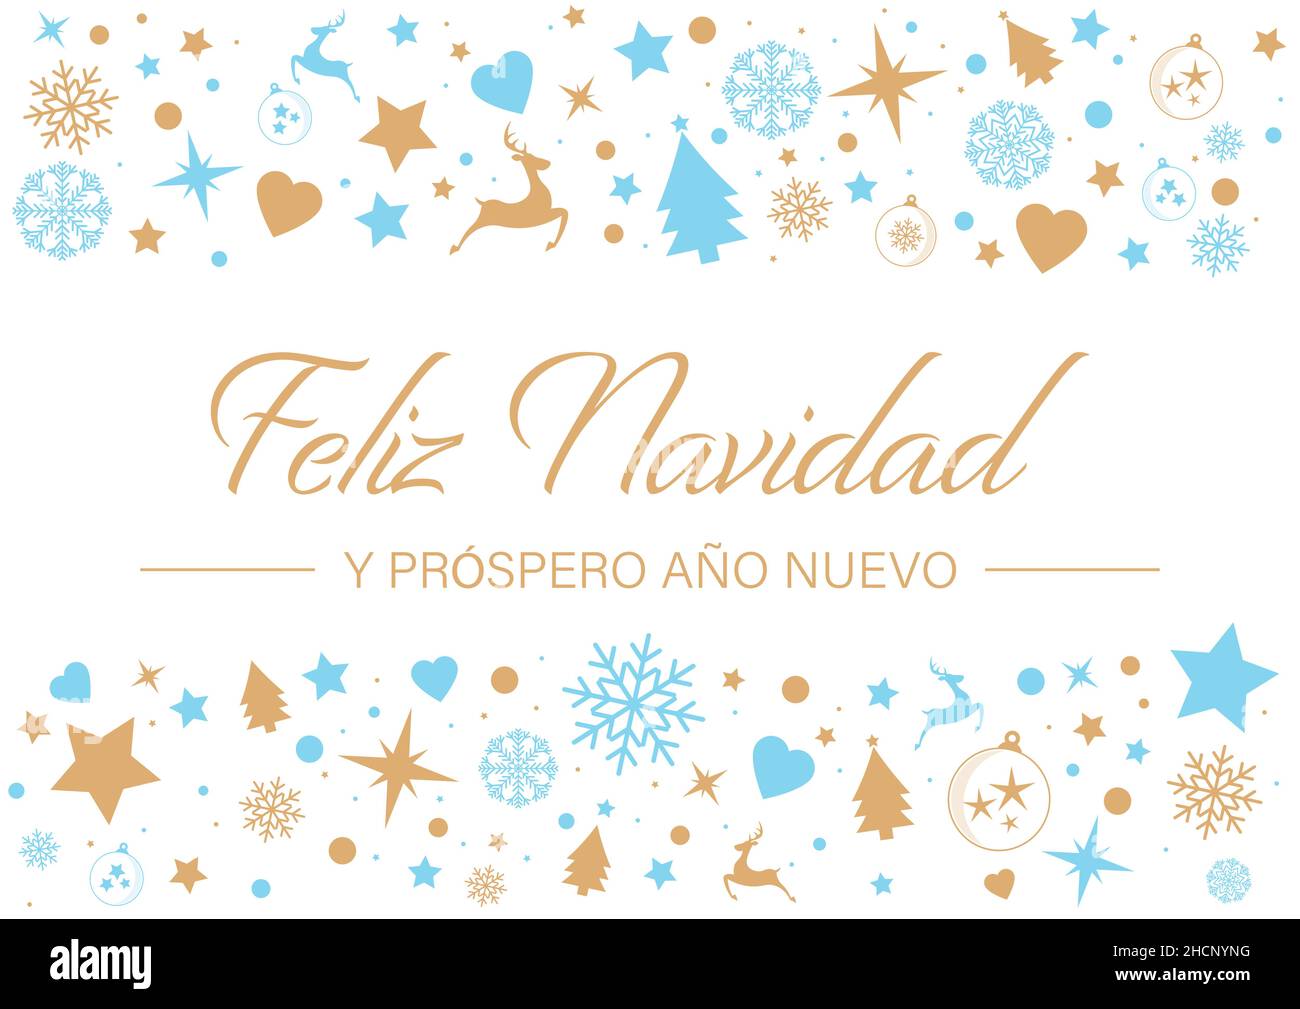 Feliz Navidad y Prospero Año Nuevo. Spanish Language. Translation: Merry Christmas and Happy New Year Stock Vector